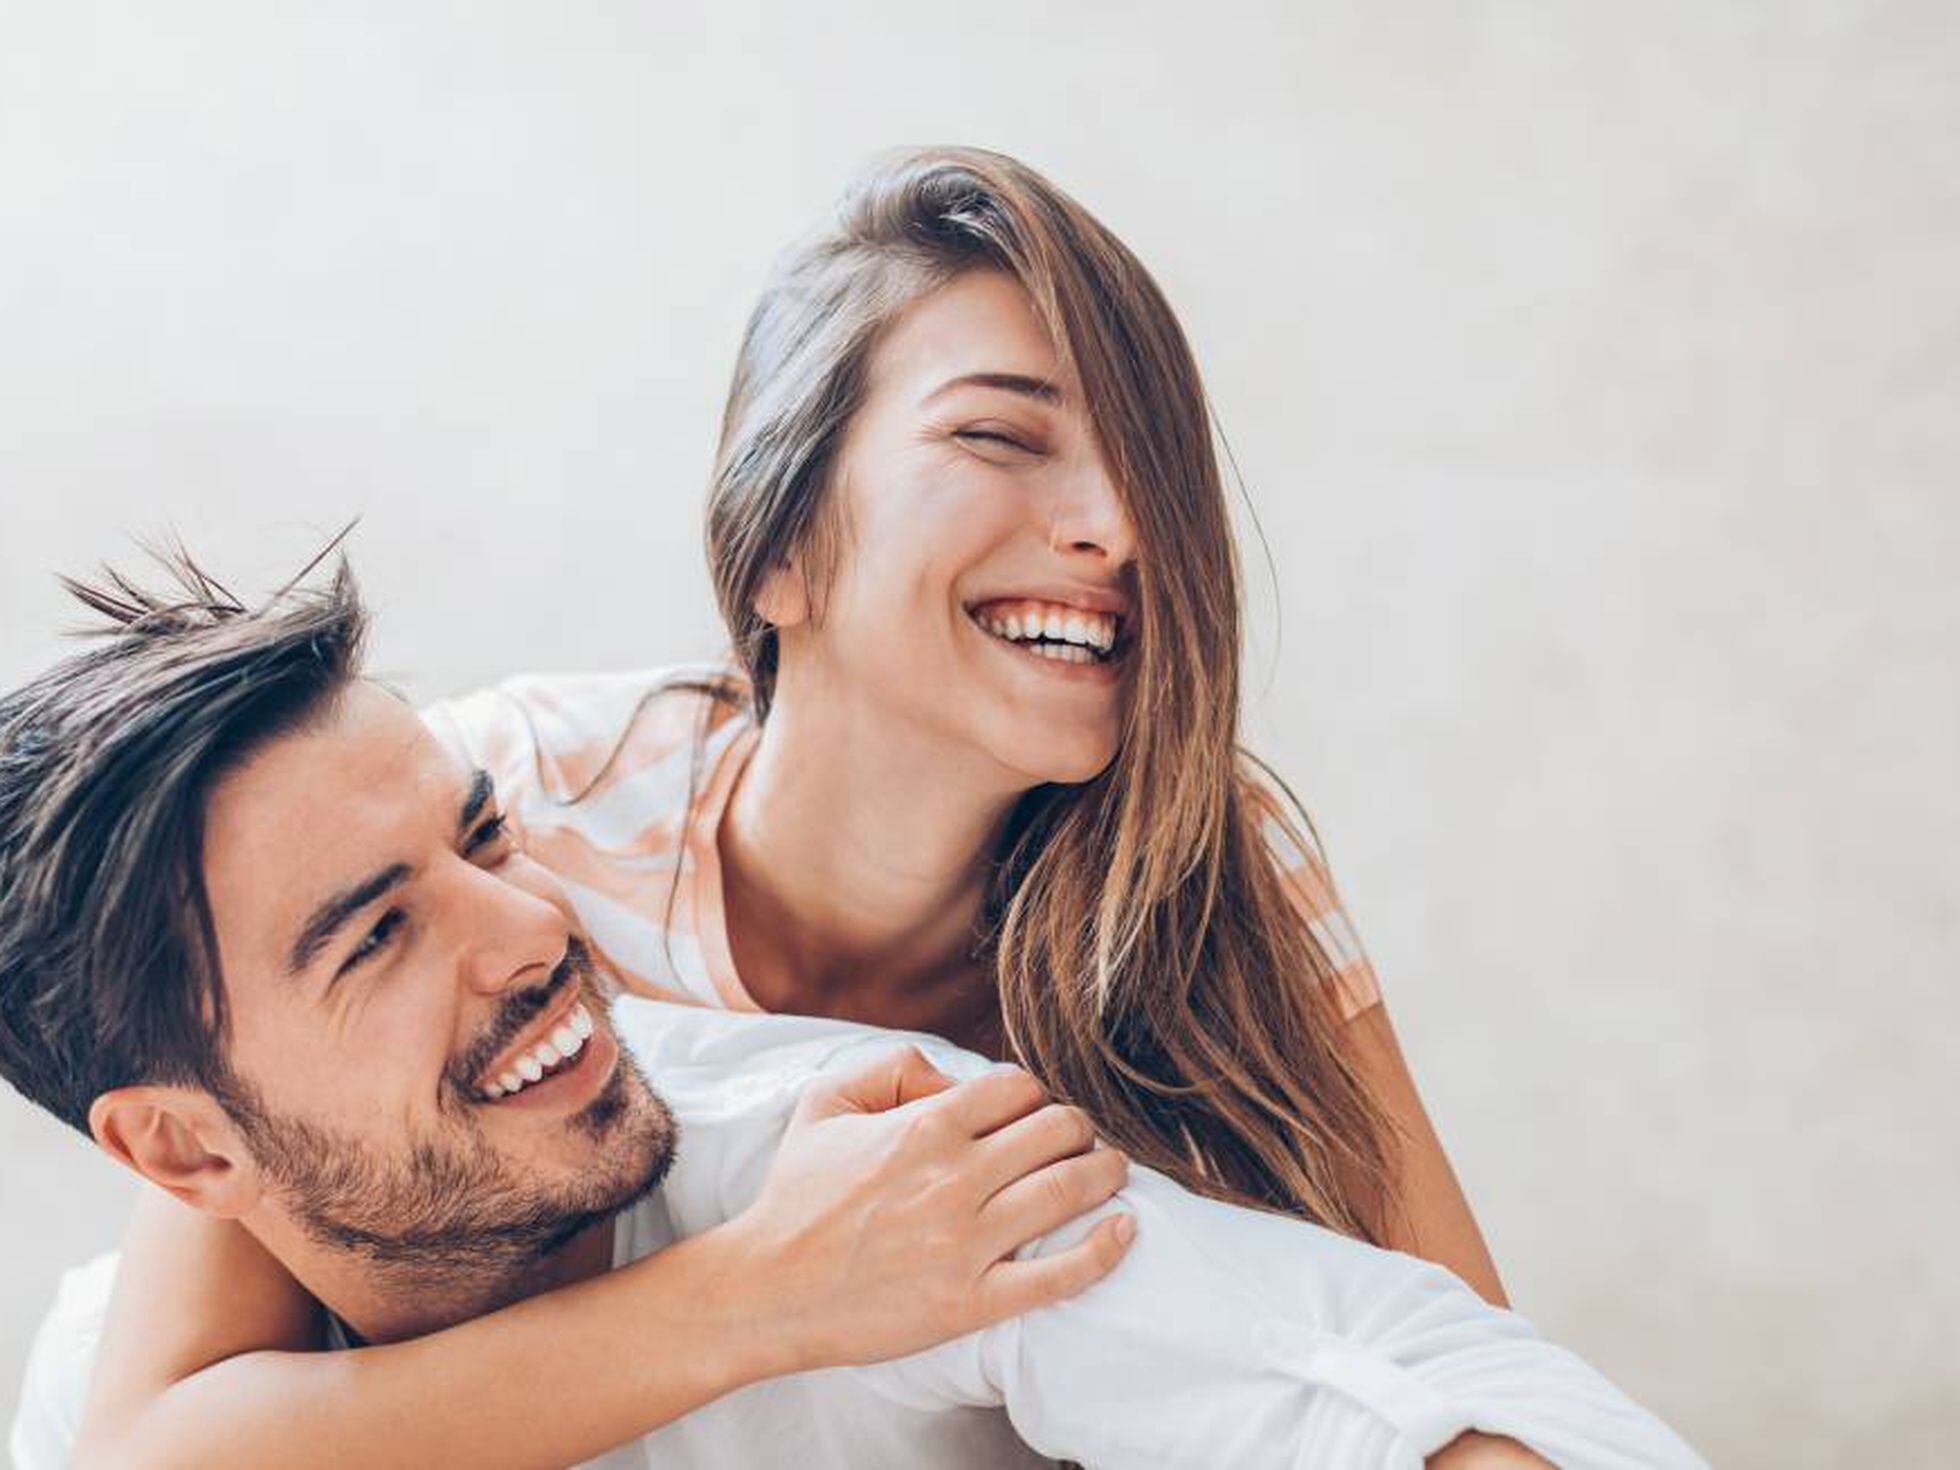 Mejorar el sexo para ser una pareja feliz: ¿buena idea o tiempo perdido? |  Bienestar | BuenaVida | EL PAÍS